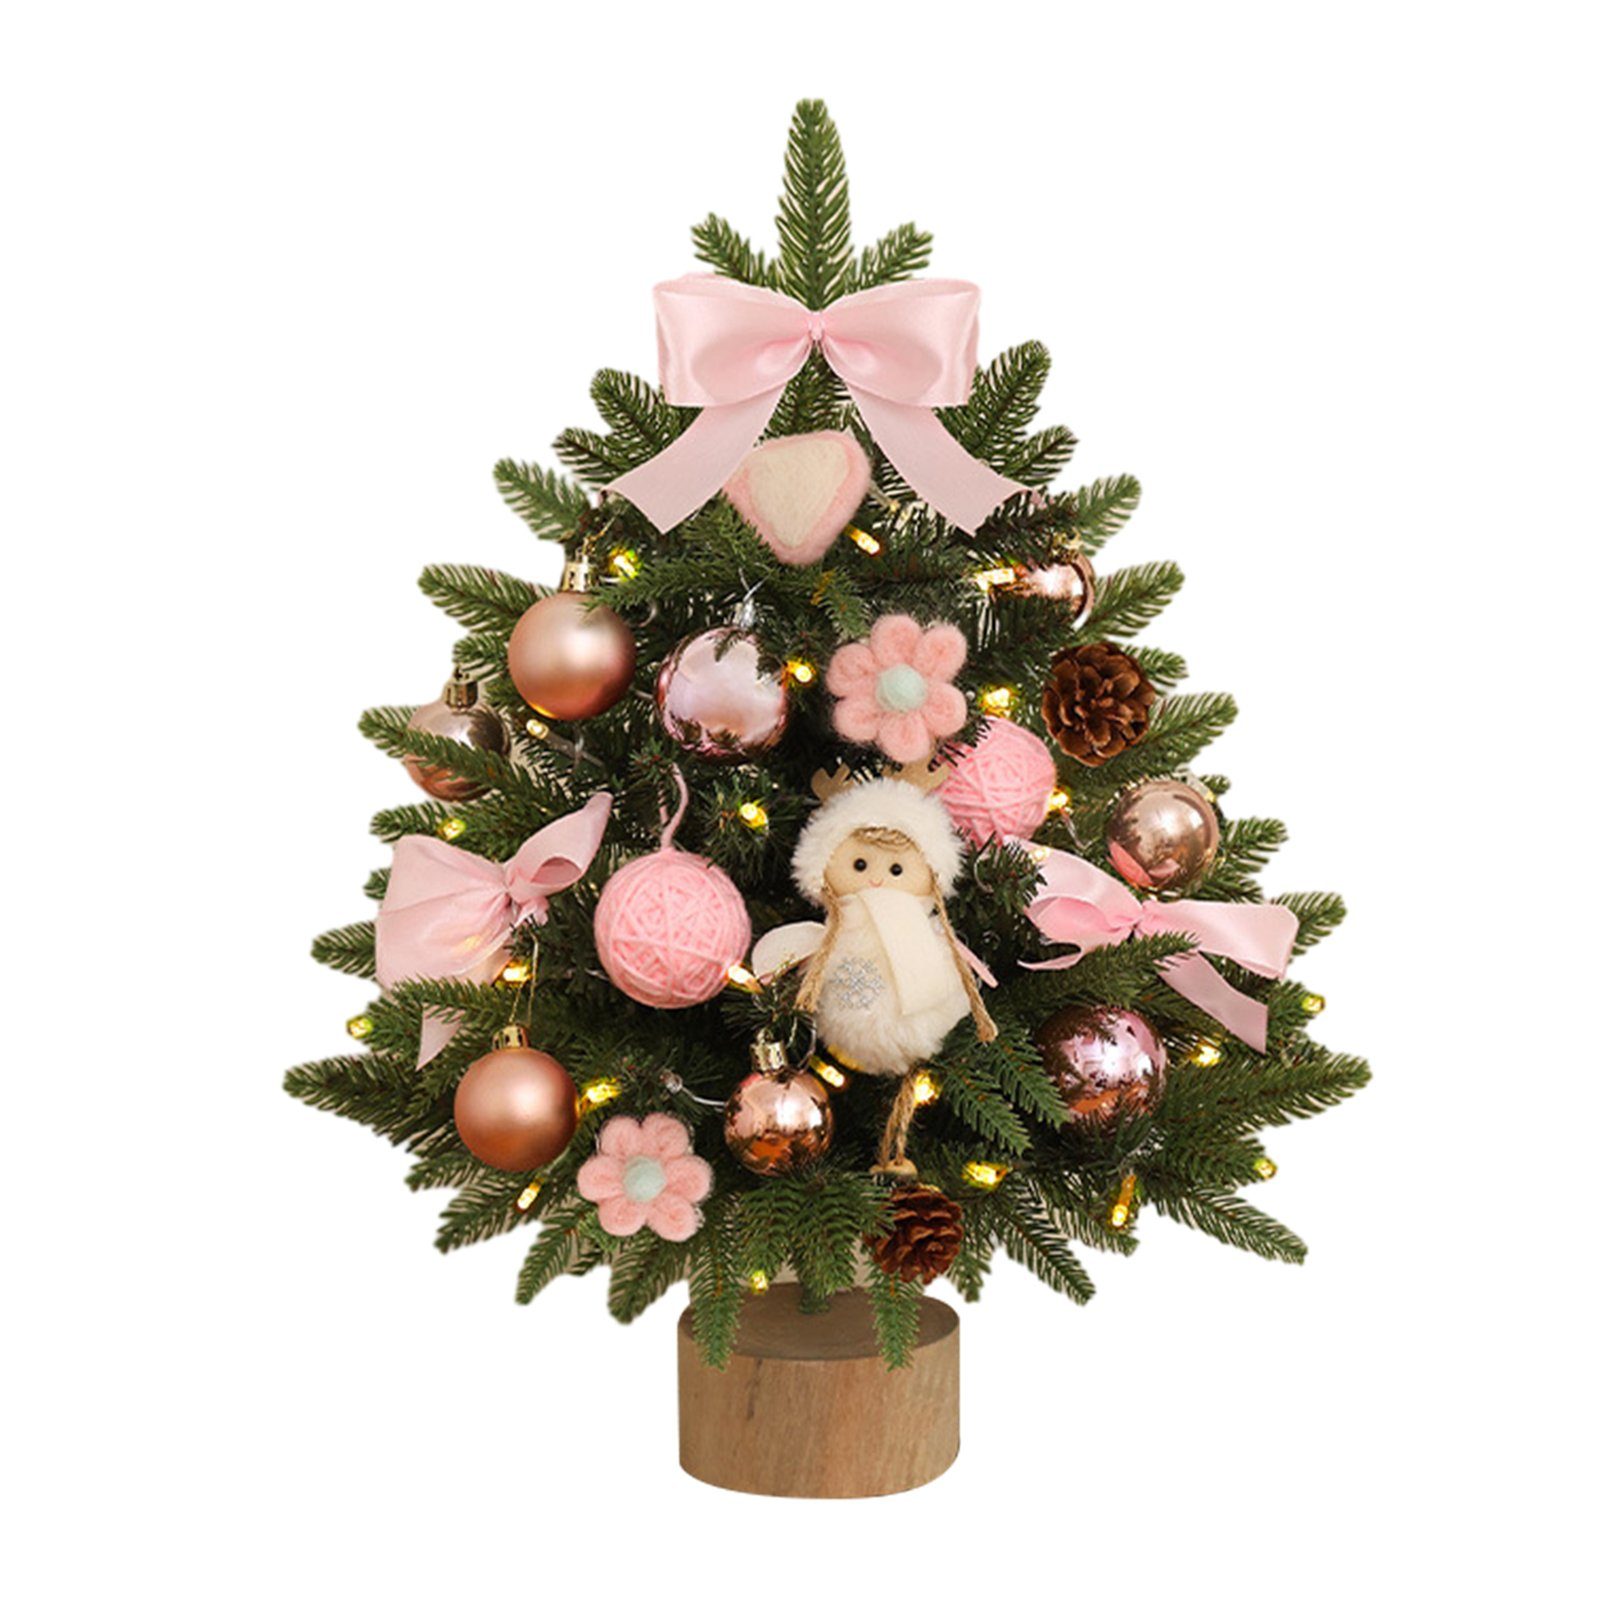 Blusmart Künstlicher Weihnachtsbaum Kleiner 45 Cm Großer Tisch-Weihnachtsbaum Mit Mehrfarbigem Dekor, Künstlicher Weihnachtsbaum pink